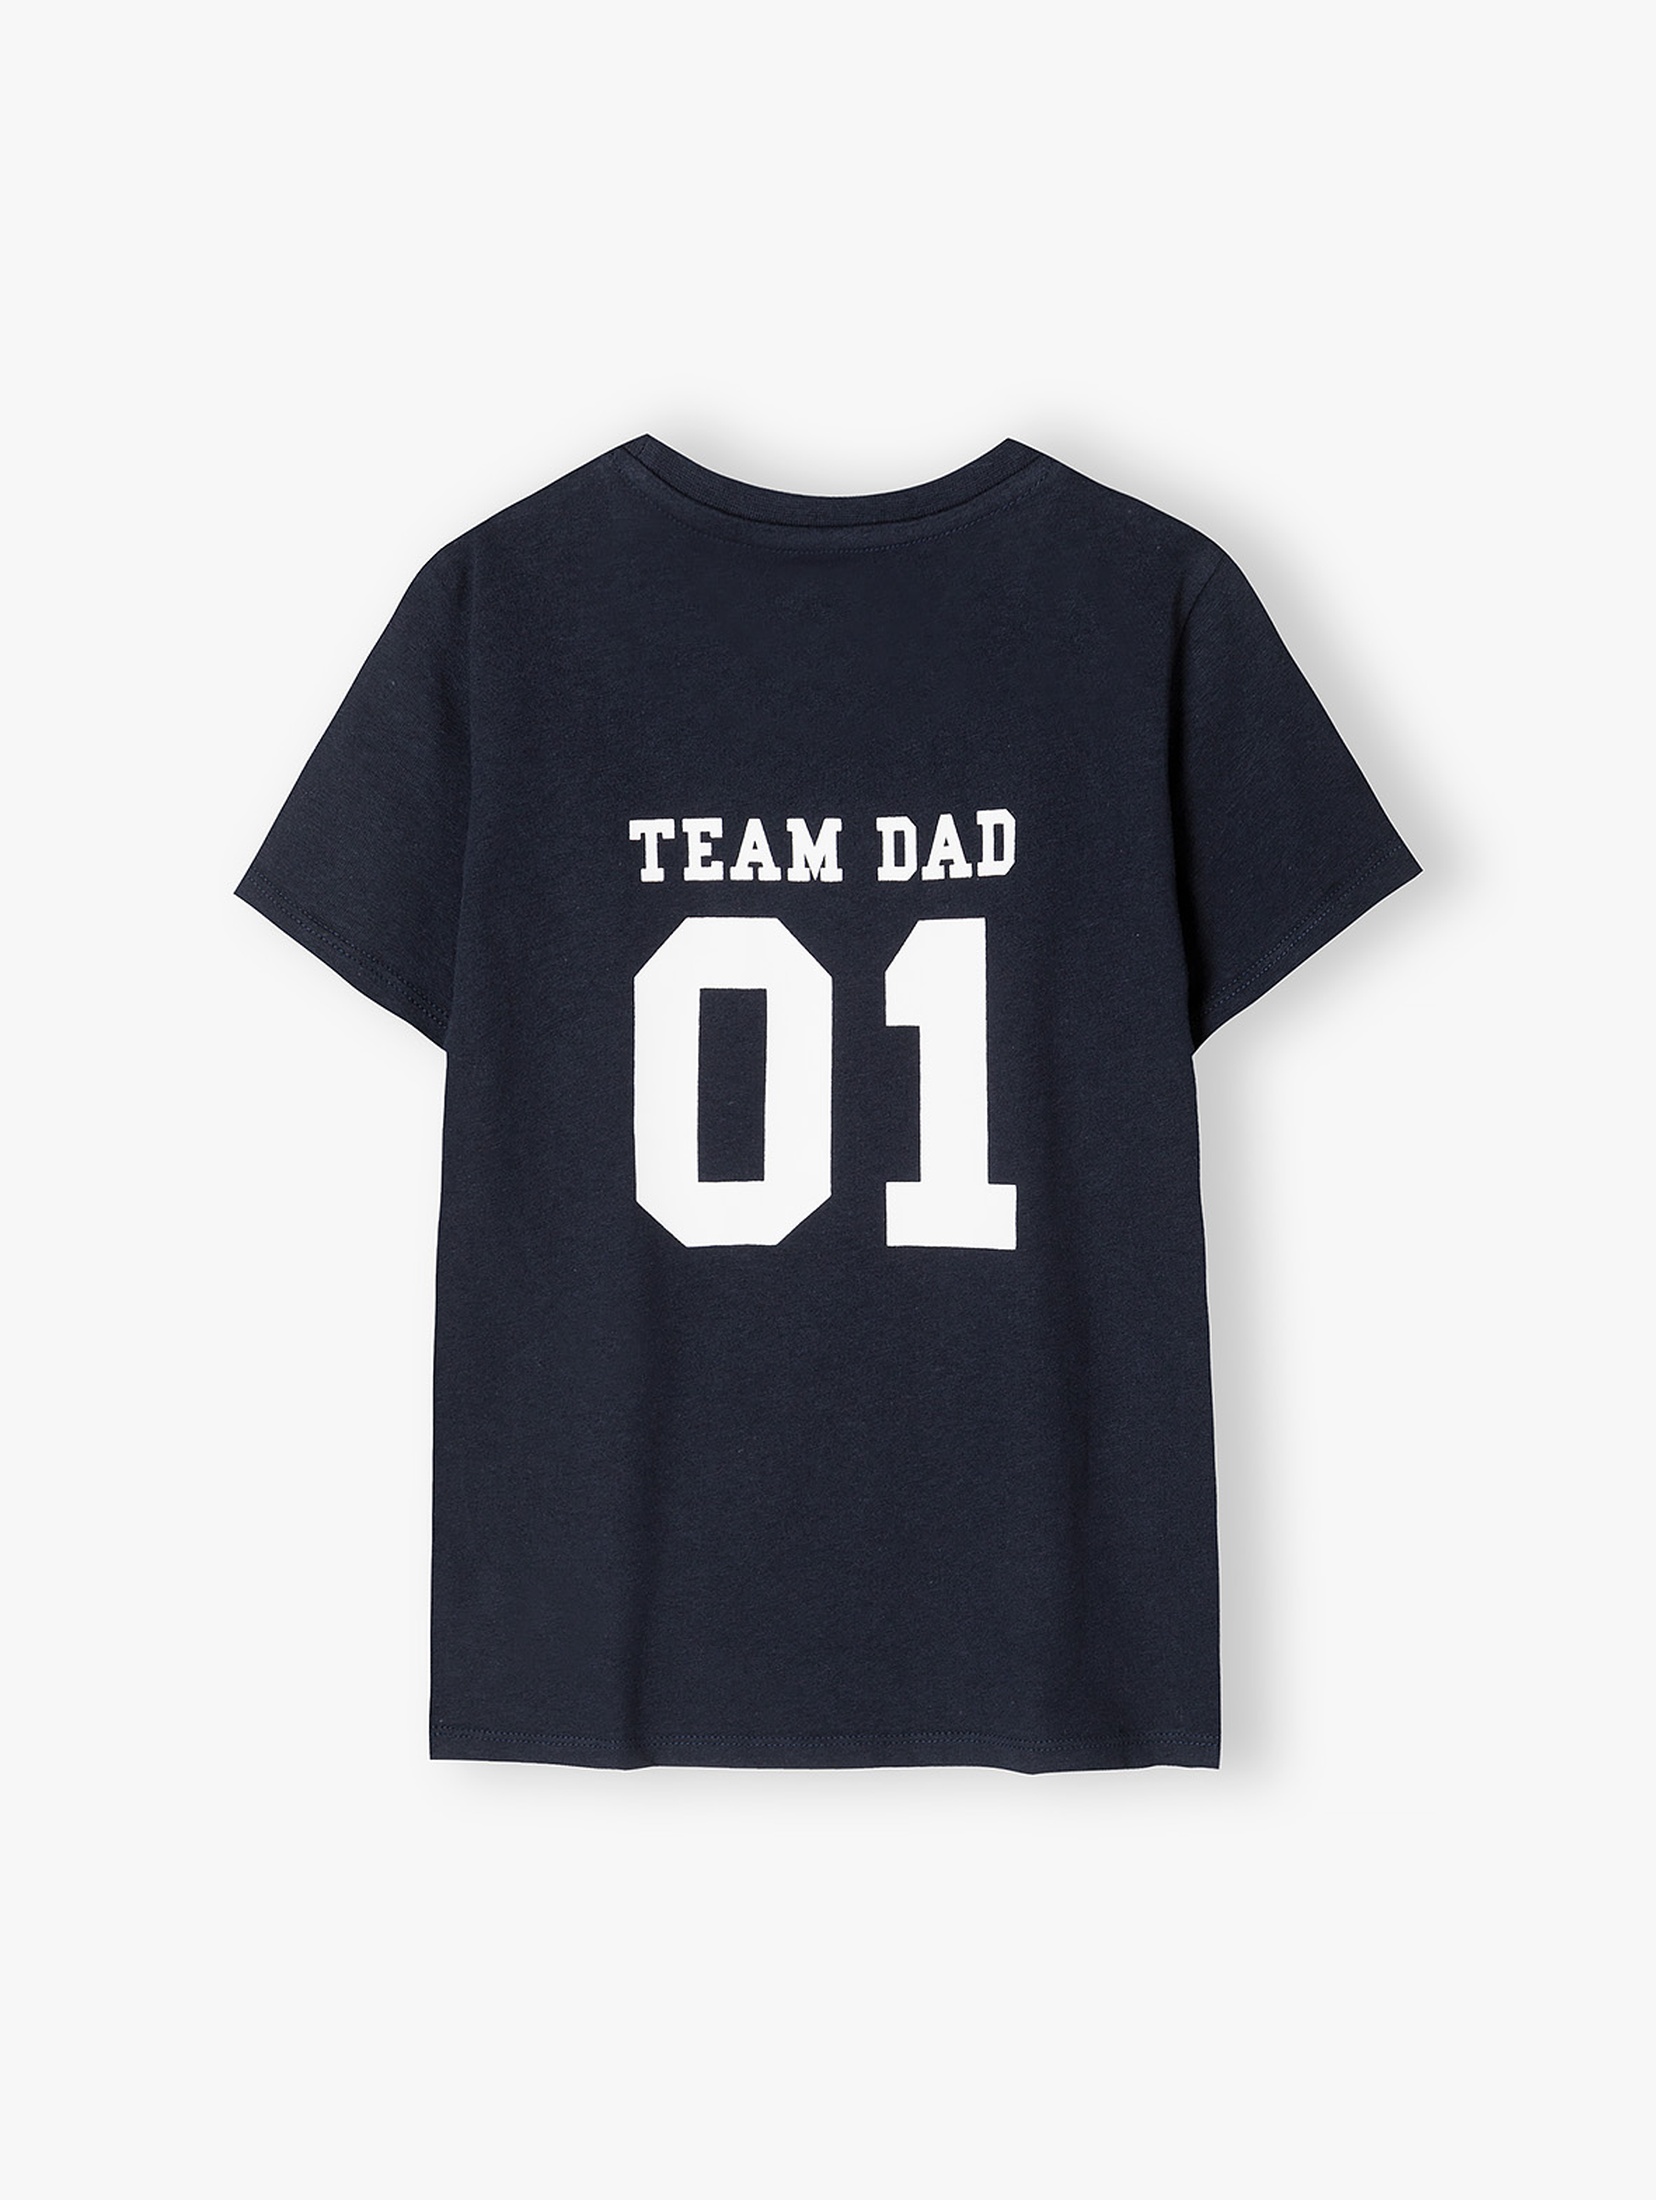 Koszulka chłopięca z napisem Team Dad - granatowa